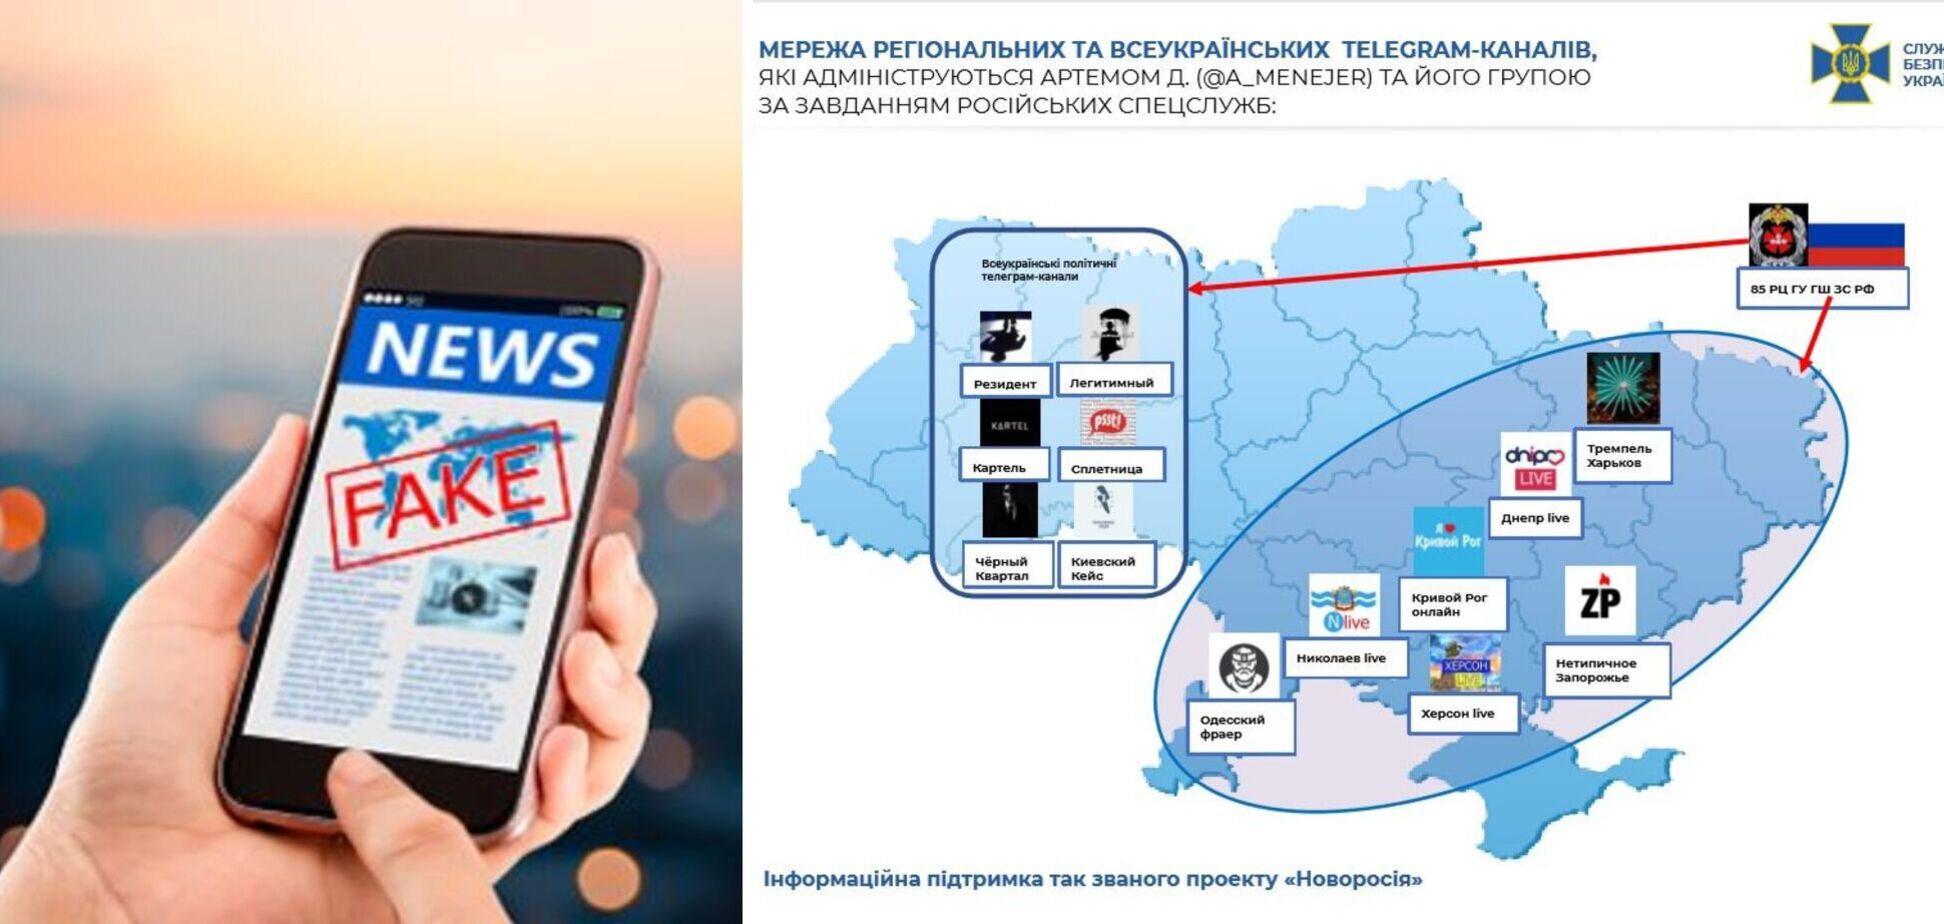 Атака пророссийских Telegram-каналов сопровождала ракетный удар: какие мысли хотели 'подсадить' украинцам